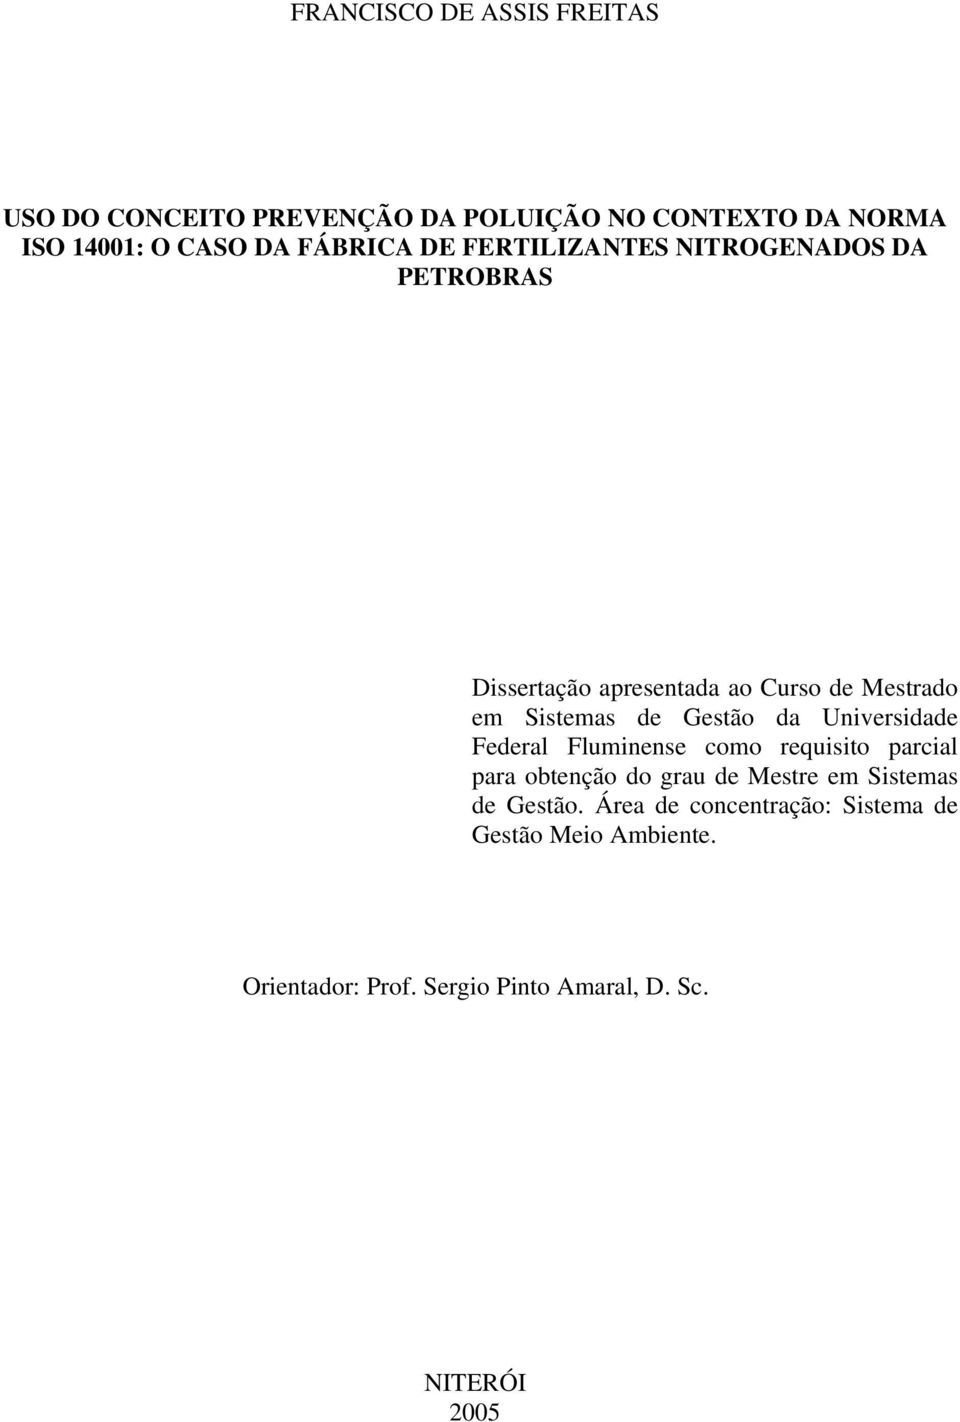 Gestão da Universidade Federal Fluminense como requisito parcial para obtenção do grau de Mestre em Sistemas de